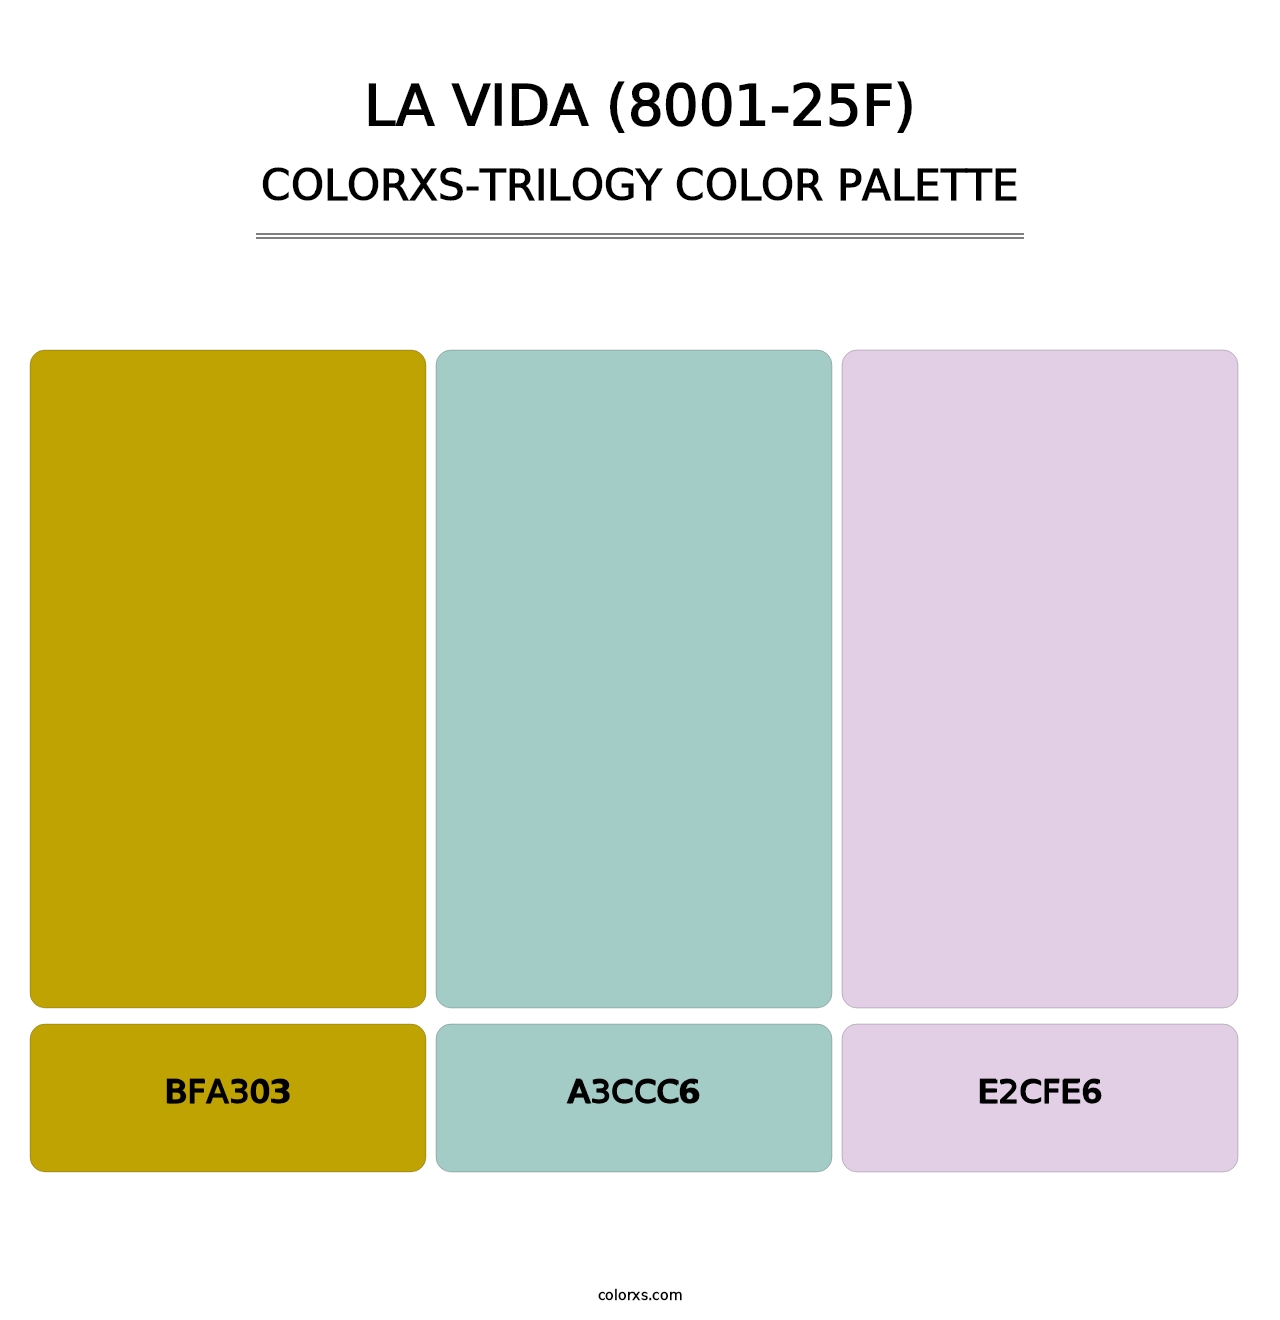 La Vida (8001-25F) - Colorxs Trilogy Palette